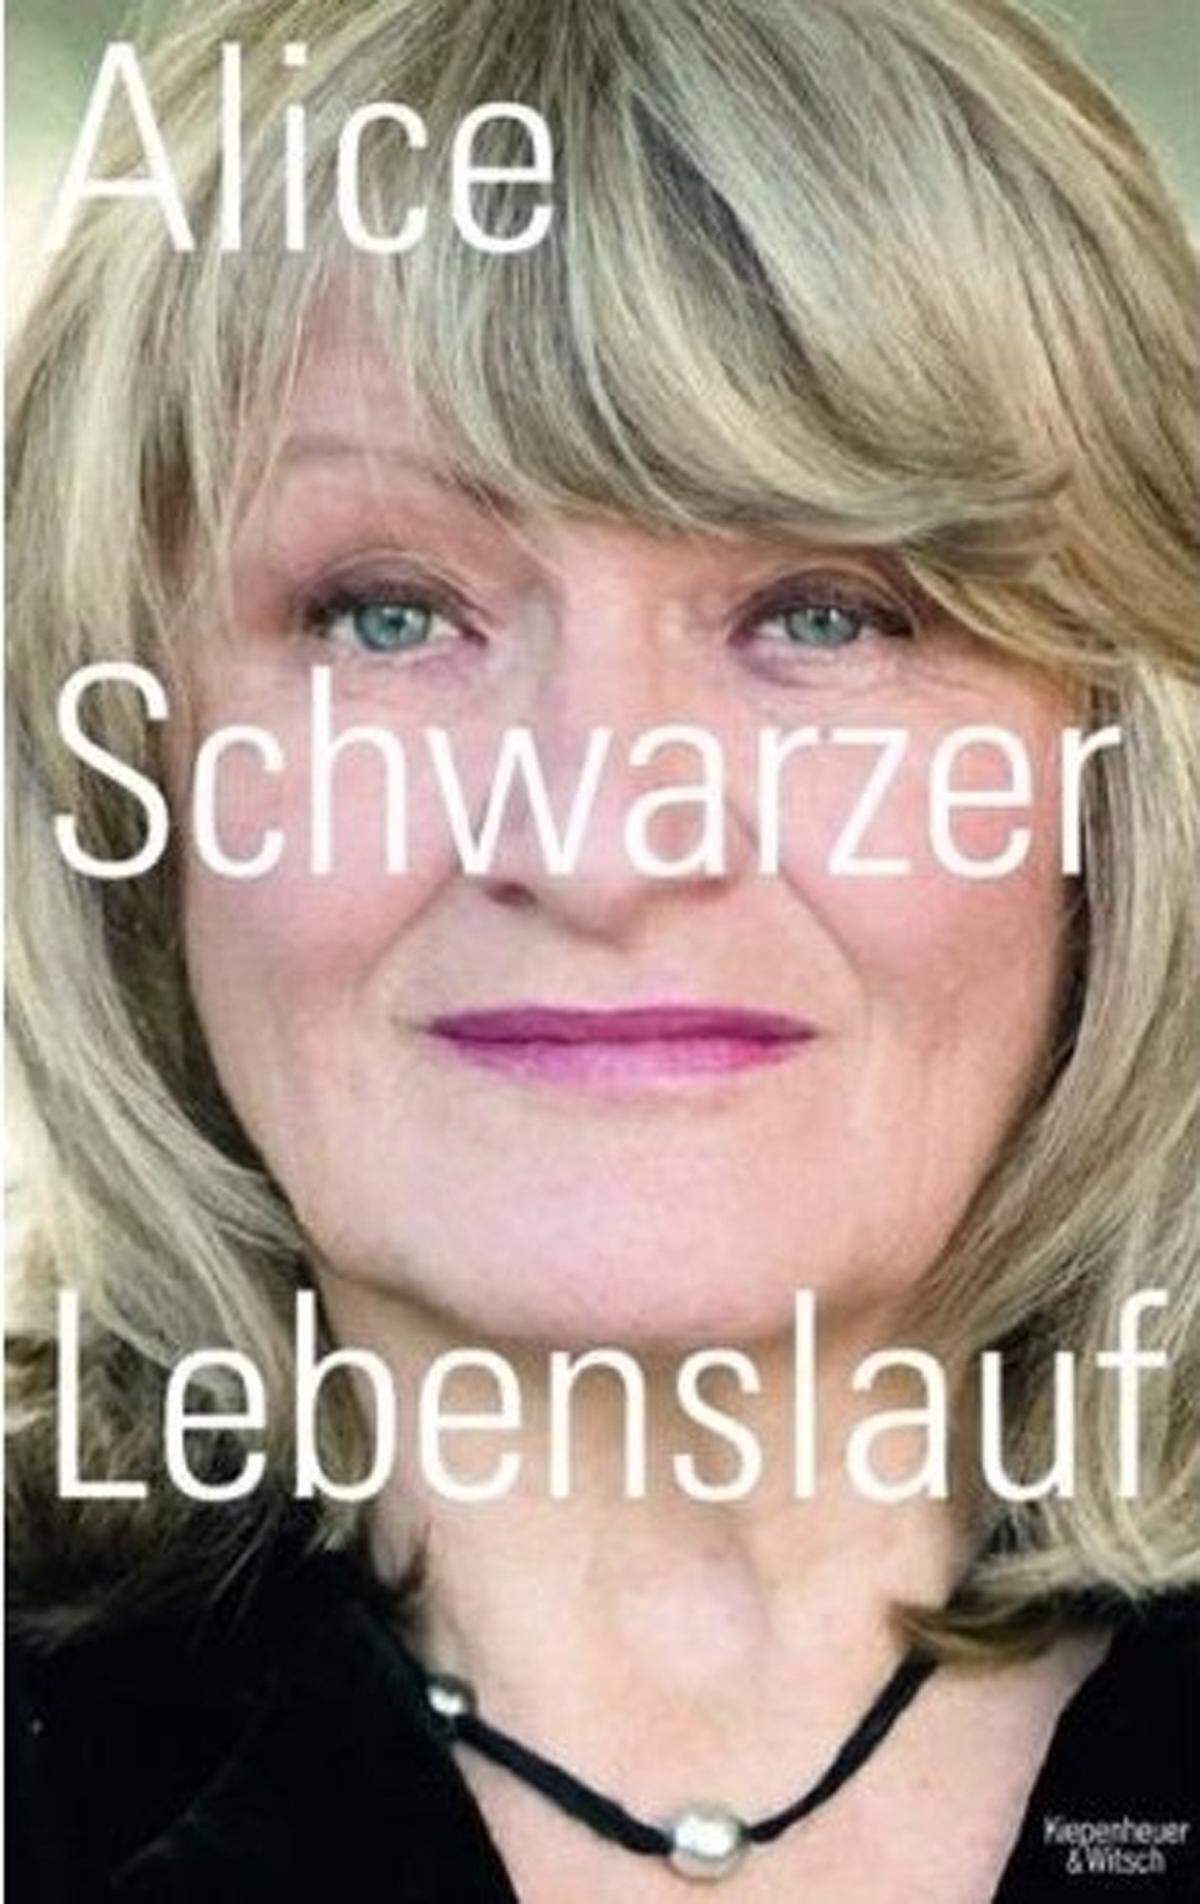 2011 hat die prominenteste deutsche Feministin über ihre ersten 35 Jahre eine Autobiografie geschrieben, die sie in neuem Licht erscheinen lässt. "Alice Schwarzer: Lebenslauf", 464 Seiten, gebunden, Euro 23,70, www.kiwi-verlag.de